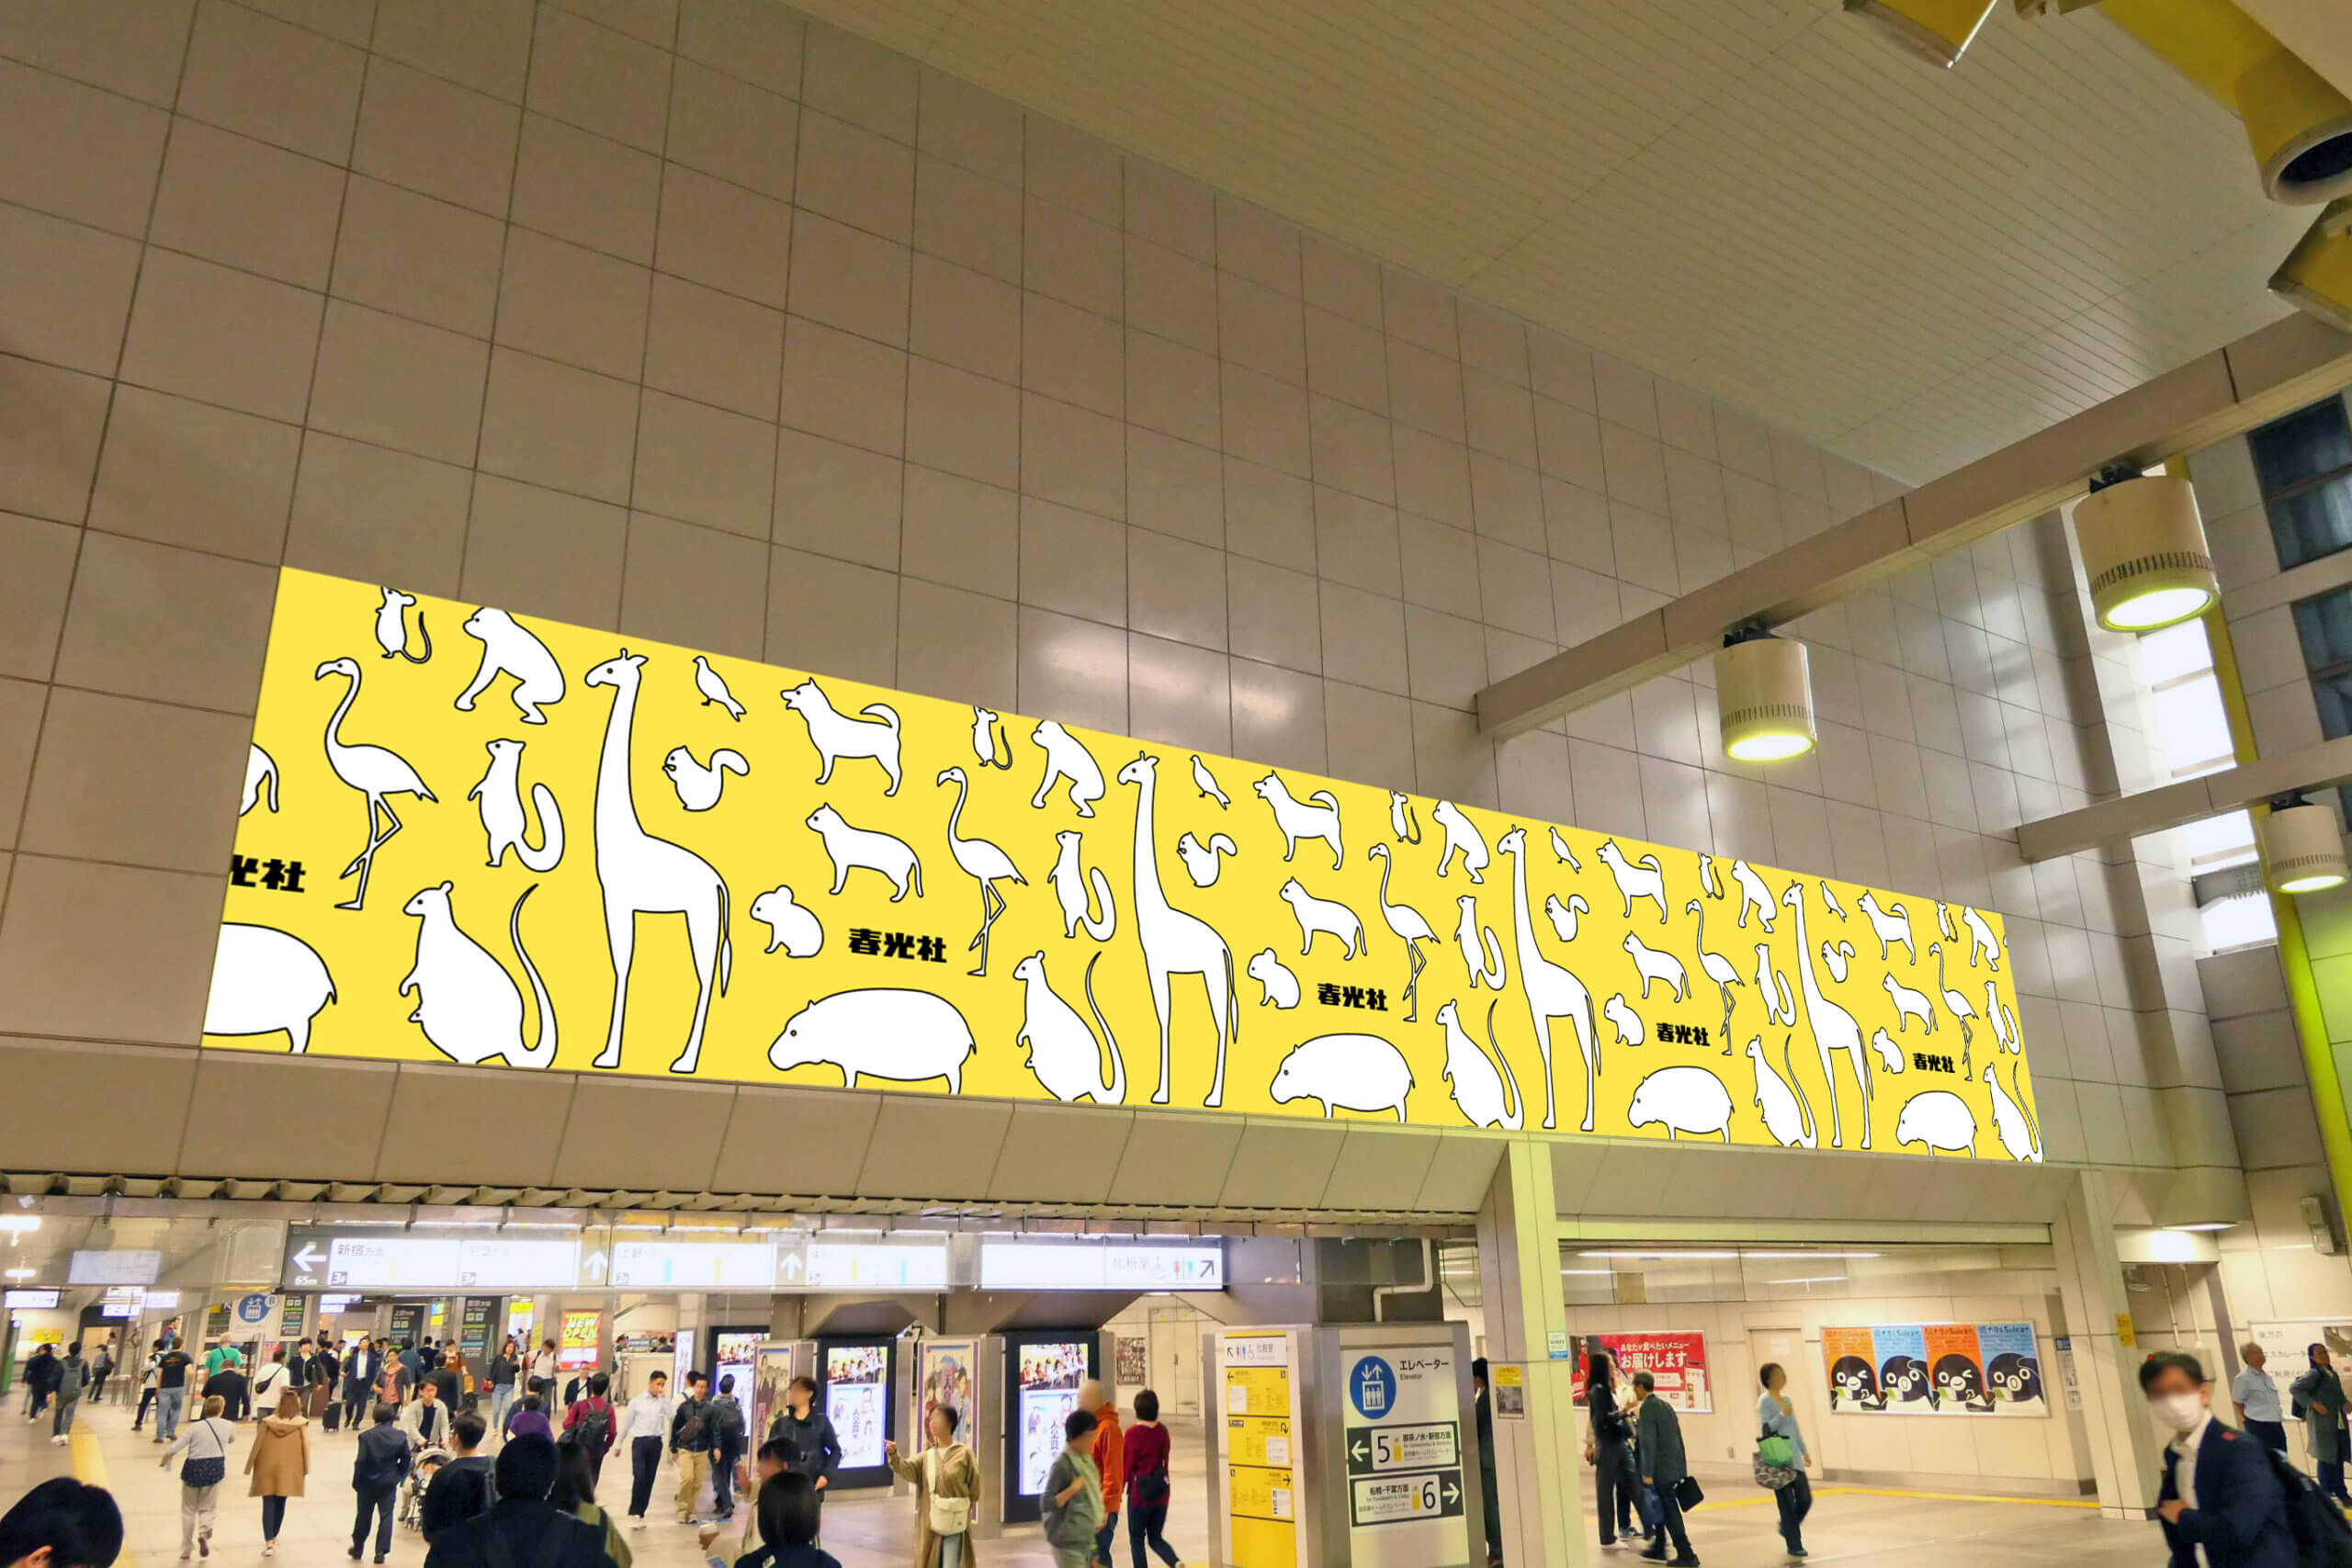 JR東日本秋葉原駅中央改札口内改札正面上部壁面に設置されている大型シート